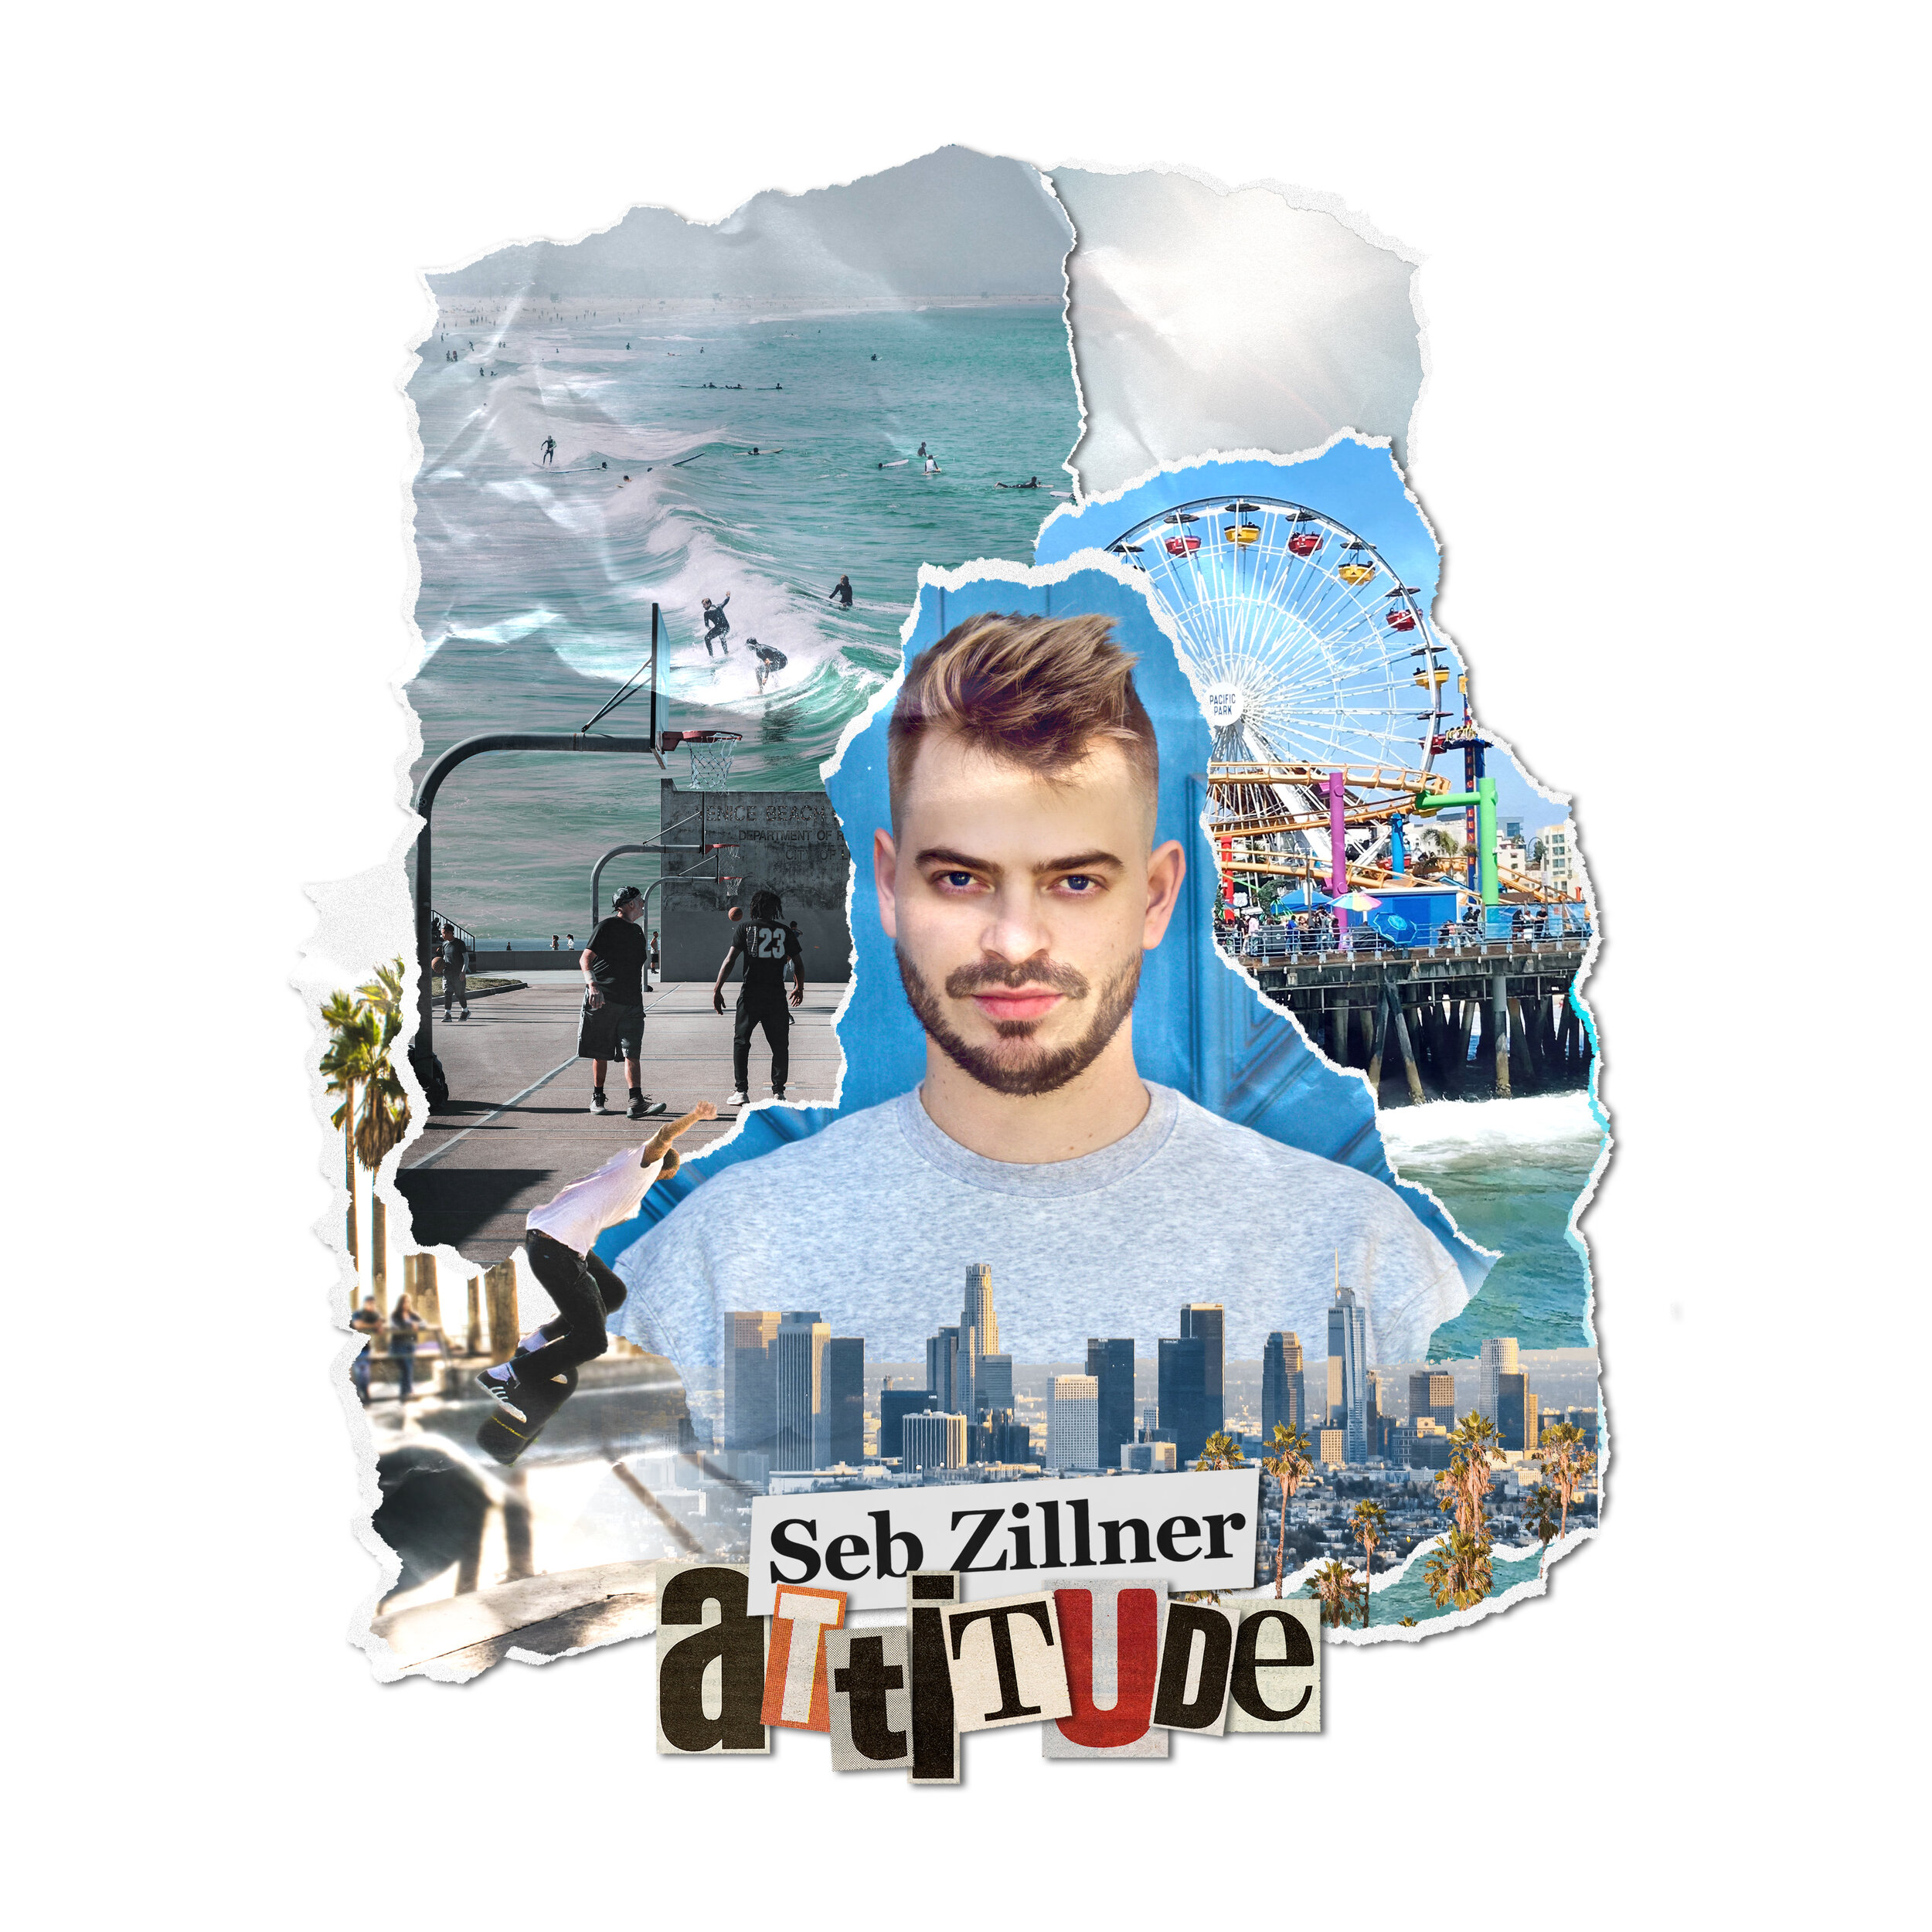   Seb Zillner - Attitude   © 2021 PLYGRND  Listen on Spotify  